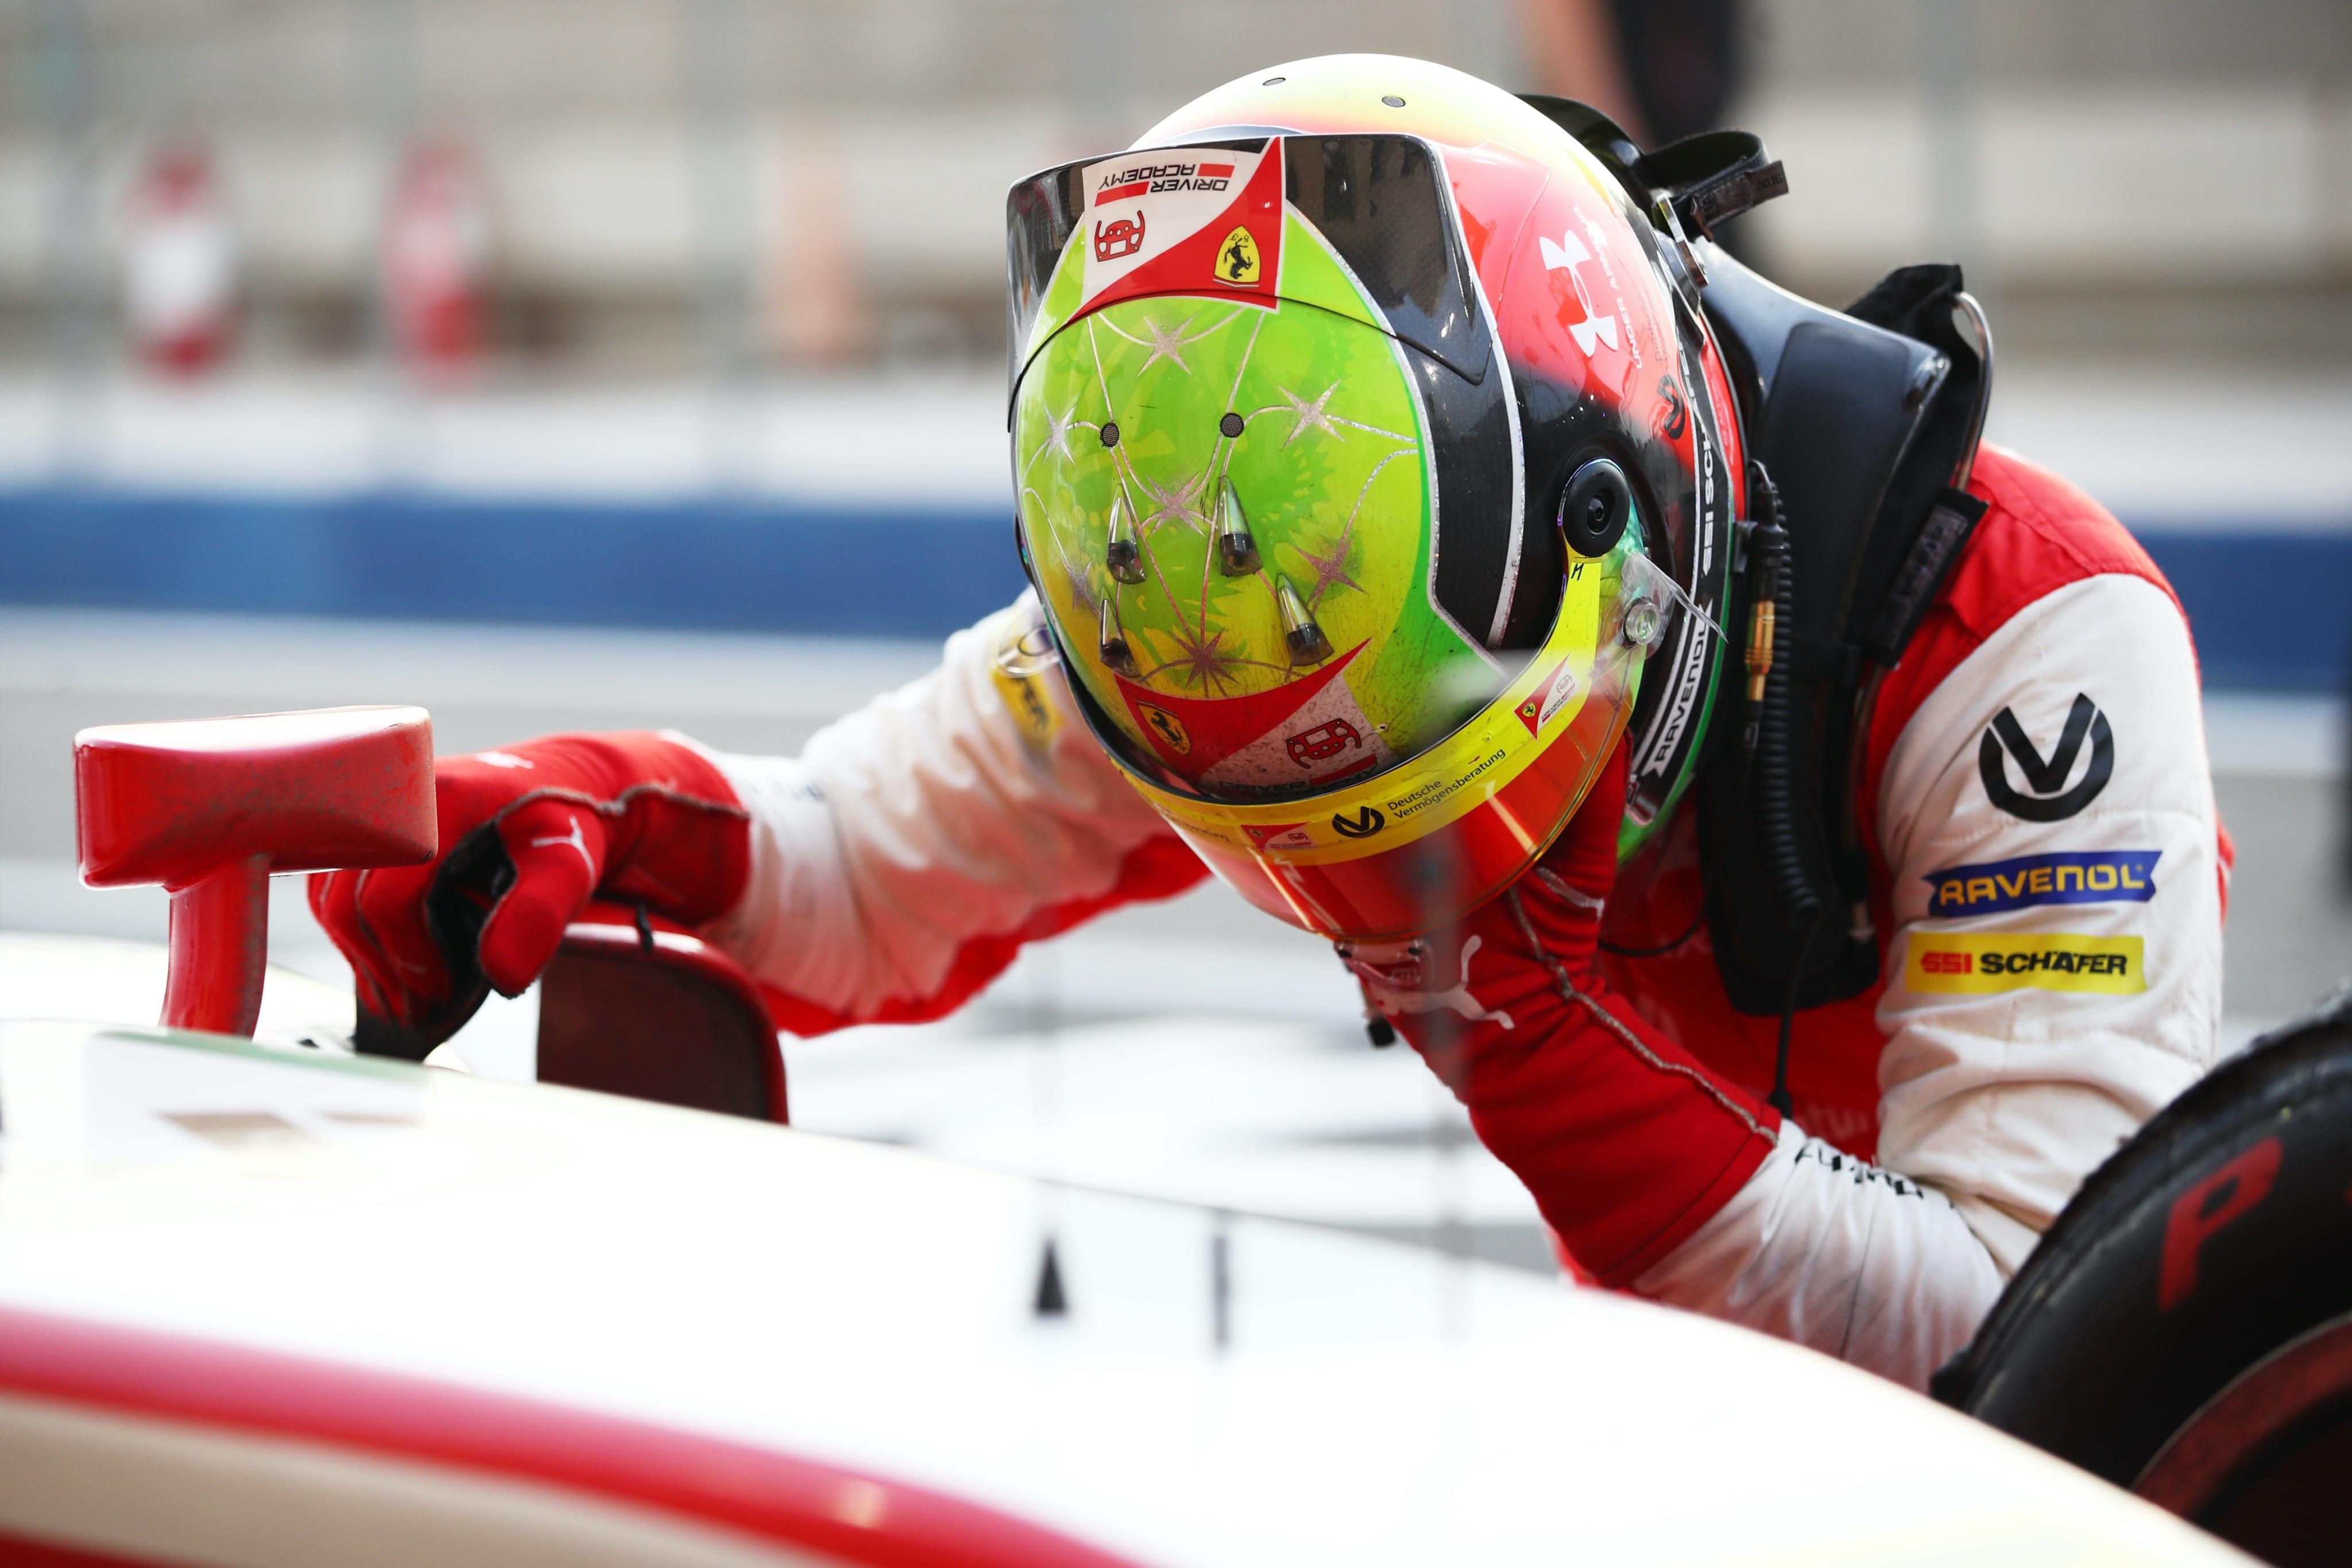 Міх Шумахер, син Міхаеля Шумахера, став чемпіоном Формули-2